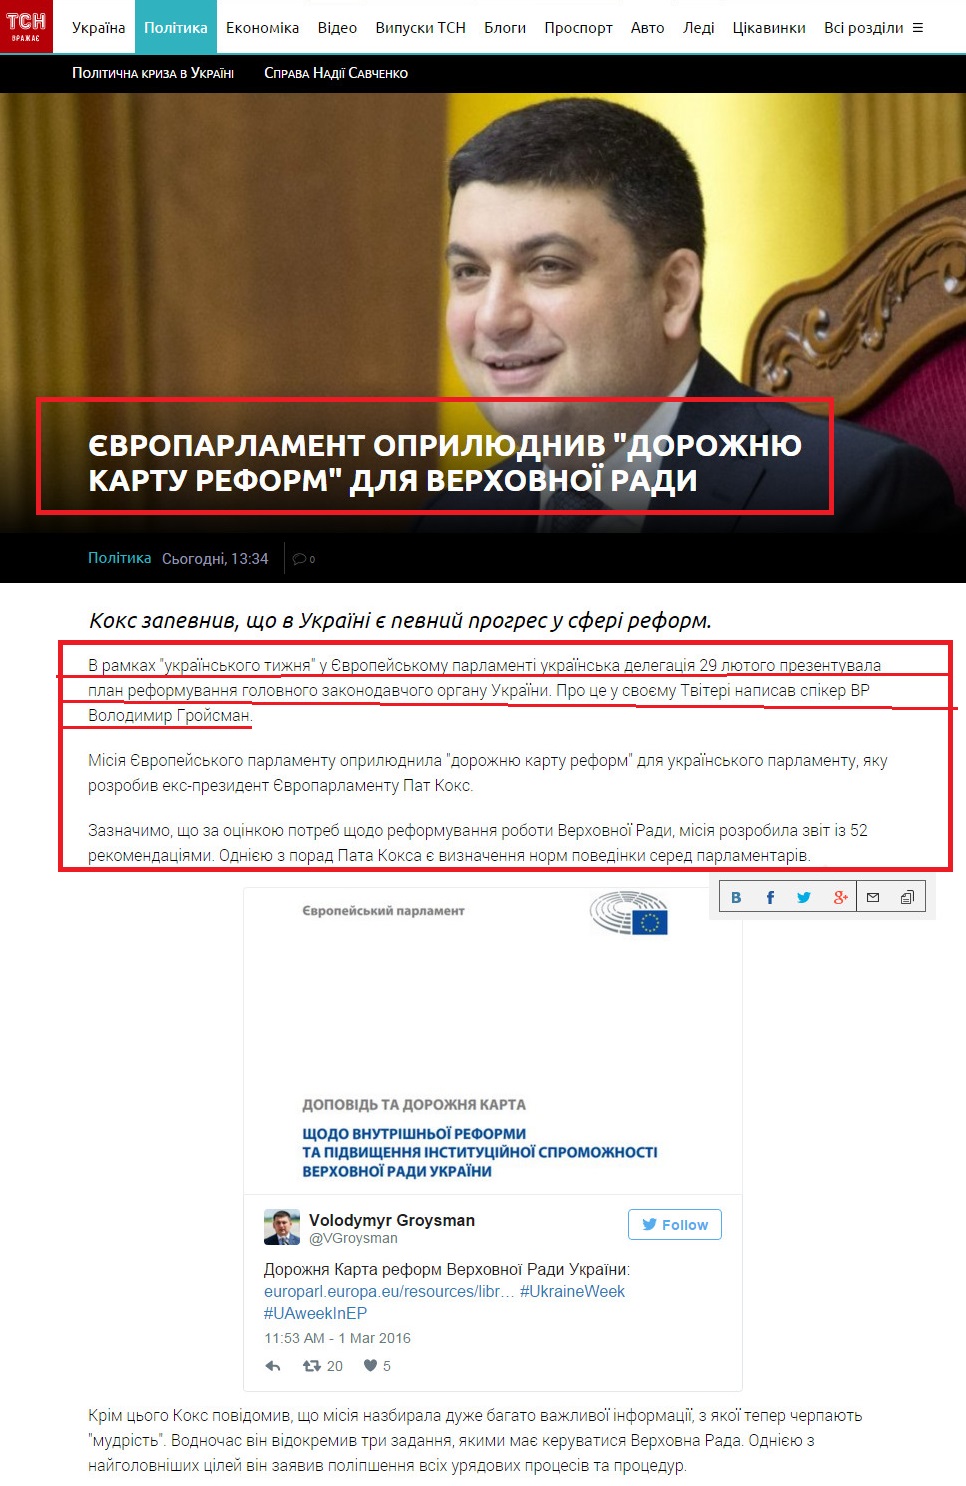 http://tsn.ua/politika/yevroparlament-oprilyudniv-dorozhnyu-kartu-reform-dlya-verhovnoyi-radi-601723.html